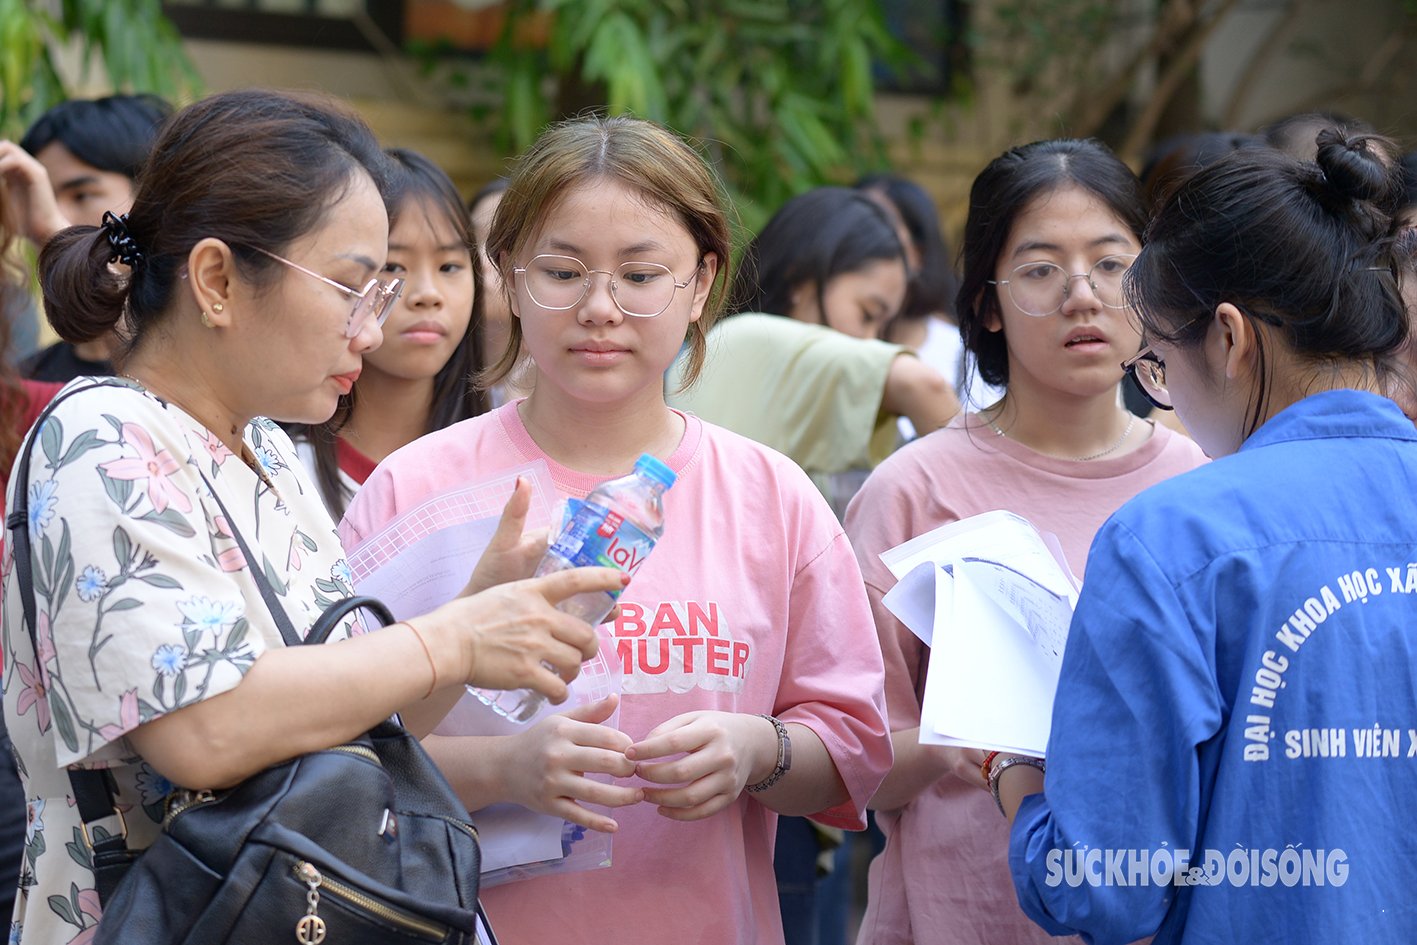 Thí sinh đang 'tranh vé' vào 2 trường THPT Chuyên cực hot thuộc Đại học Quốc gia Hà Nội- Ảnh 10.